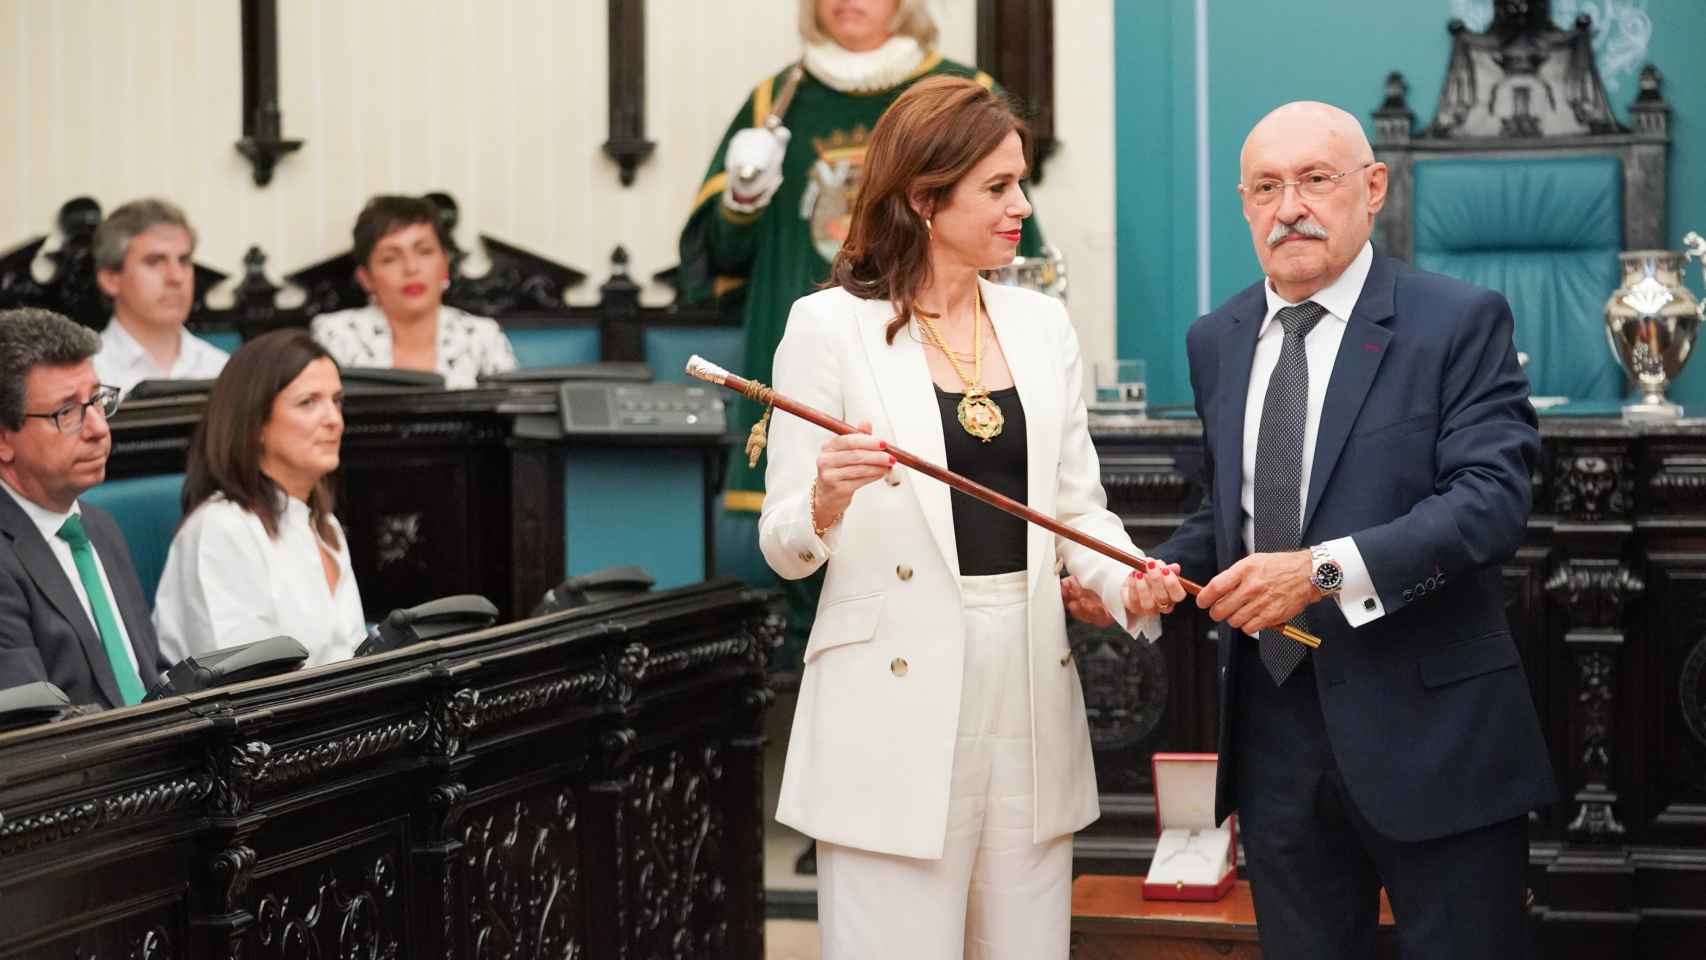 La nueva alcaldesa de Vitoria, Maider Etxebarria (PSE-EE), recibe el bastón de mando en la sesión de constitución del Ayuntamiento / Iñaki Berasaluce - Europa Press